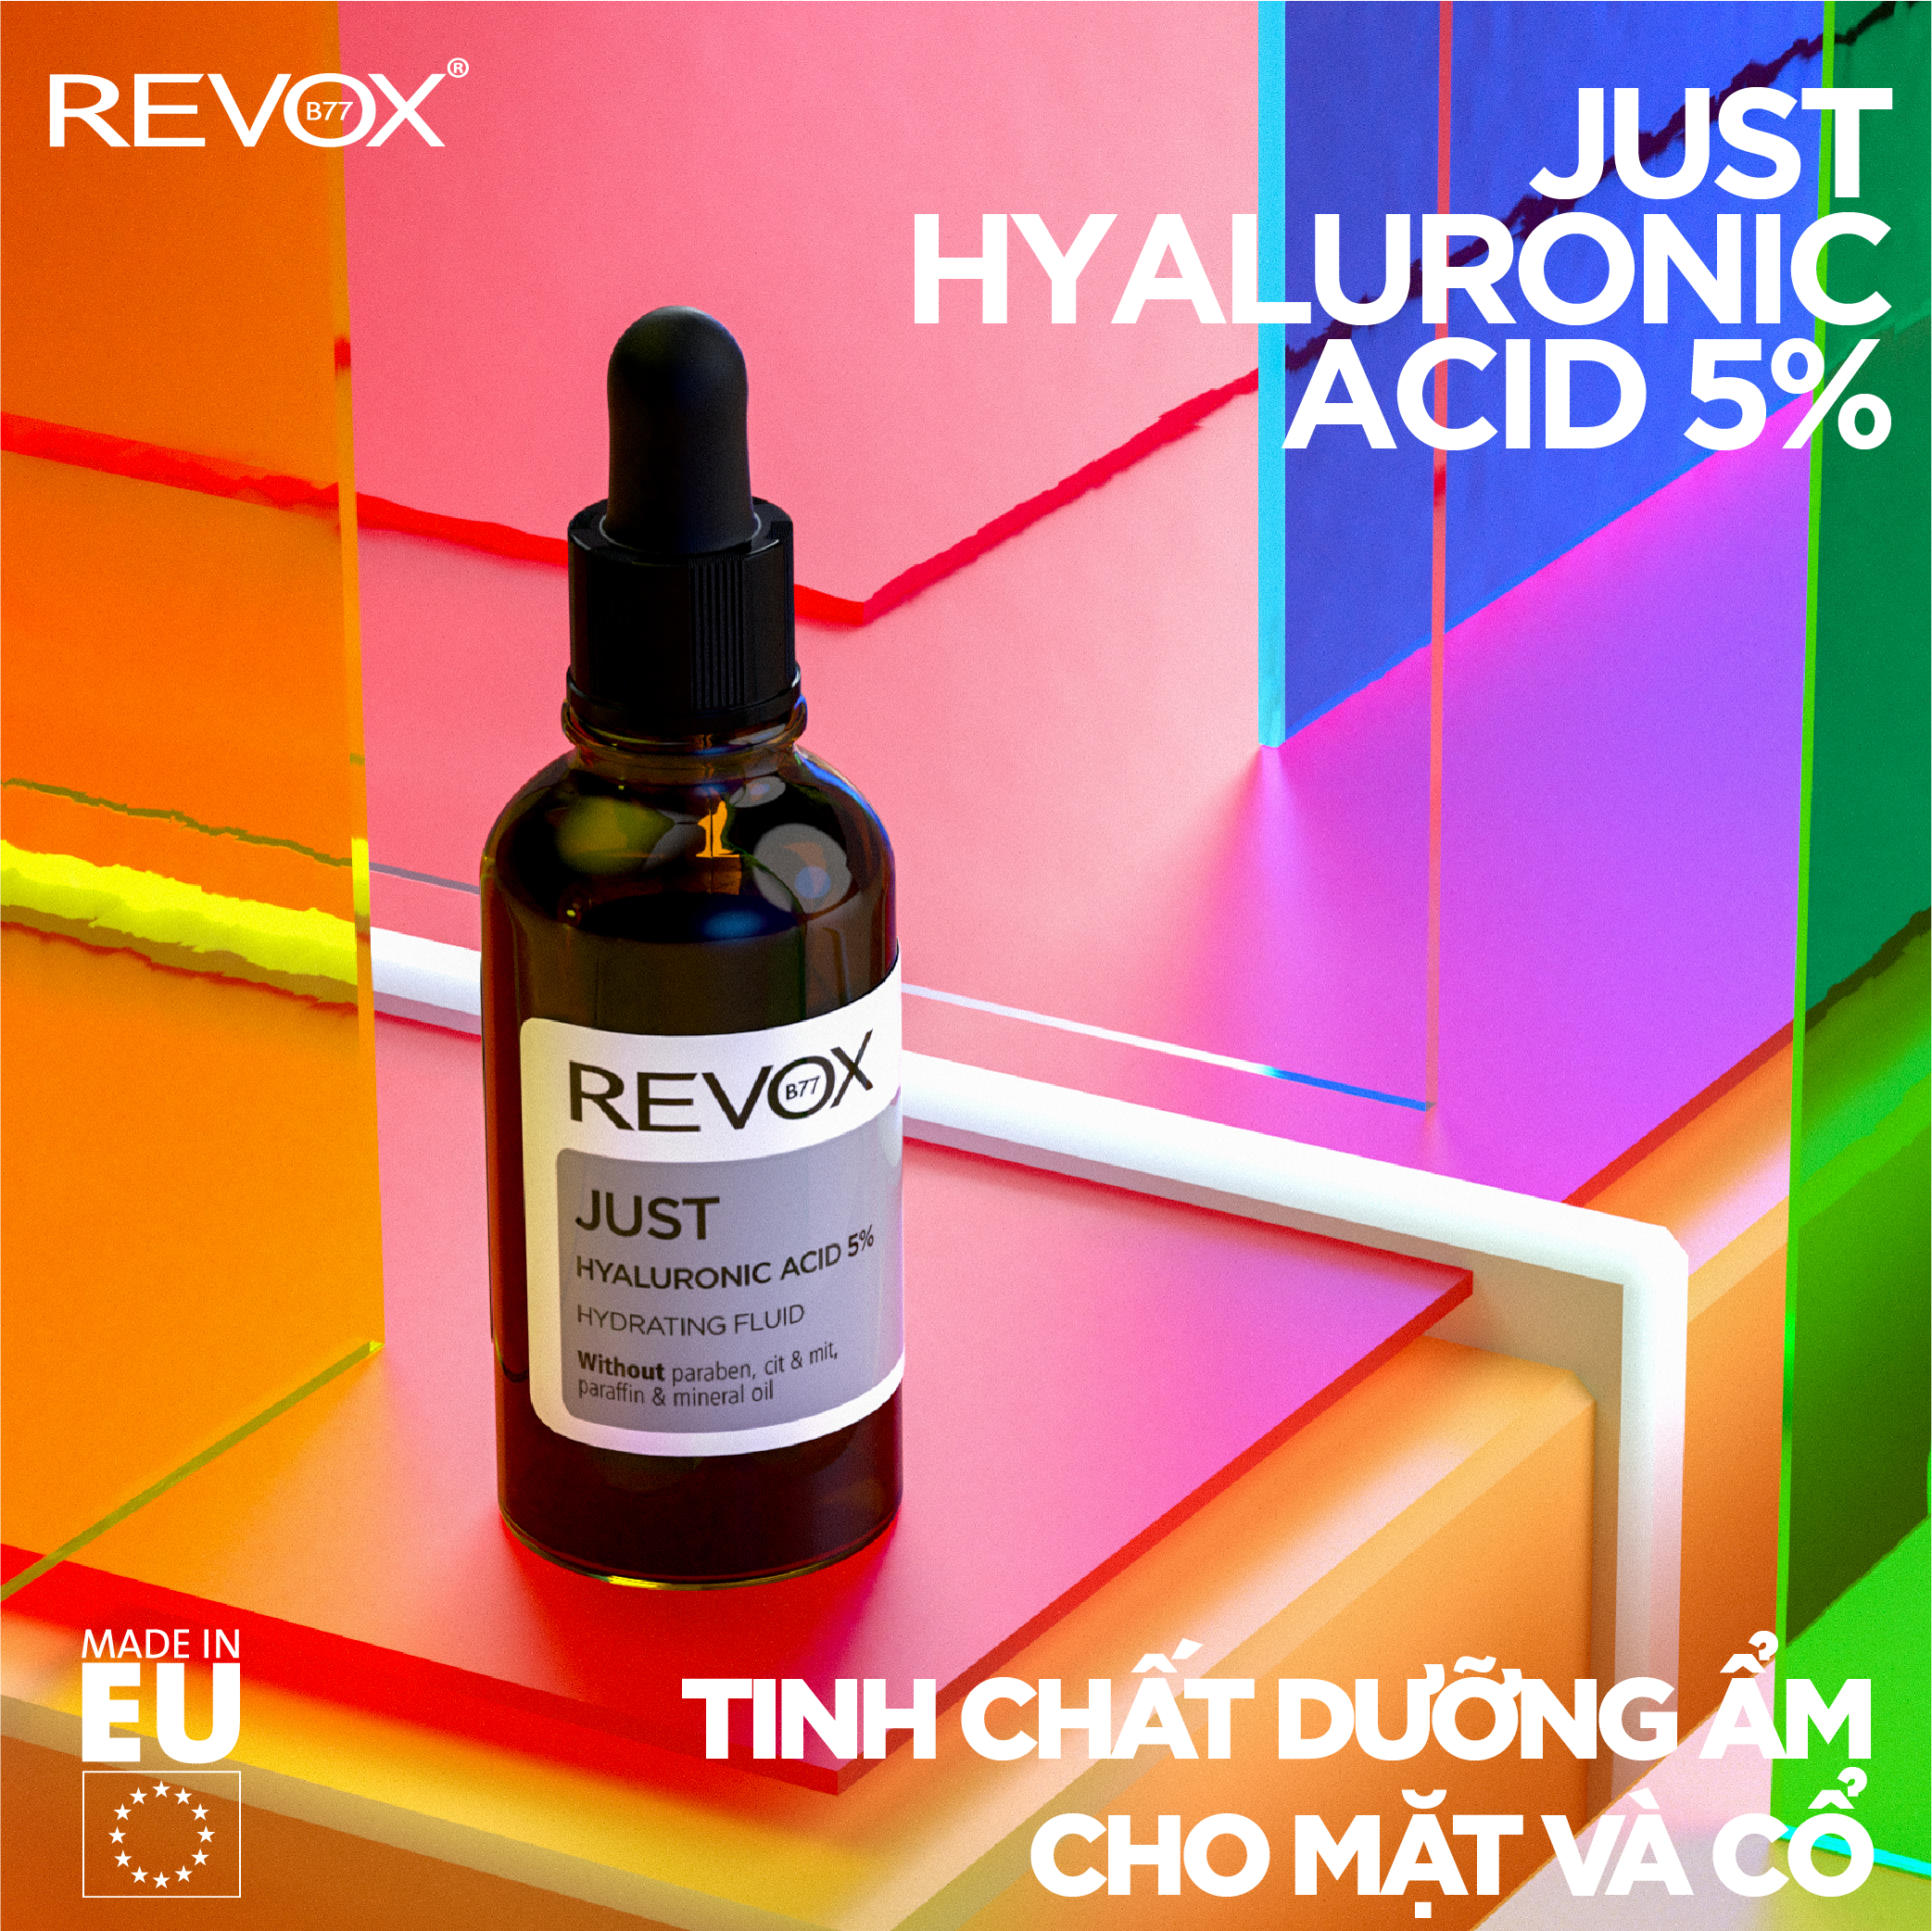 Tinh chất dưỡng ẩm cho mặt và cổ Revox B77 Just - Hyaluronic Acid 5%